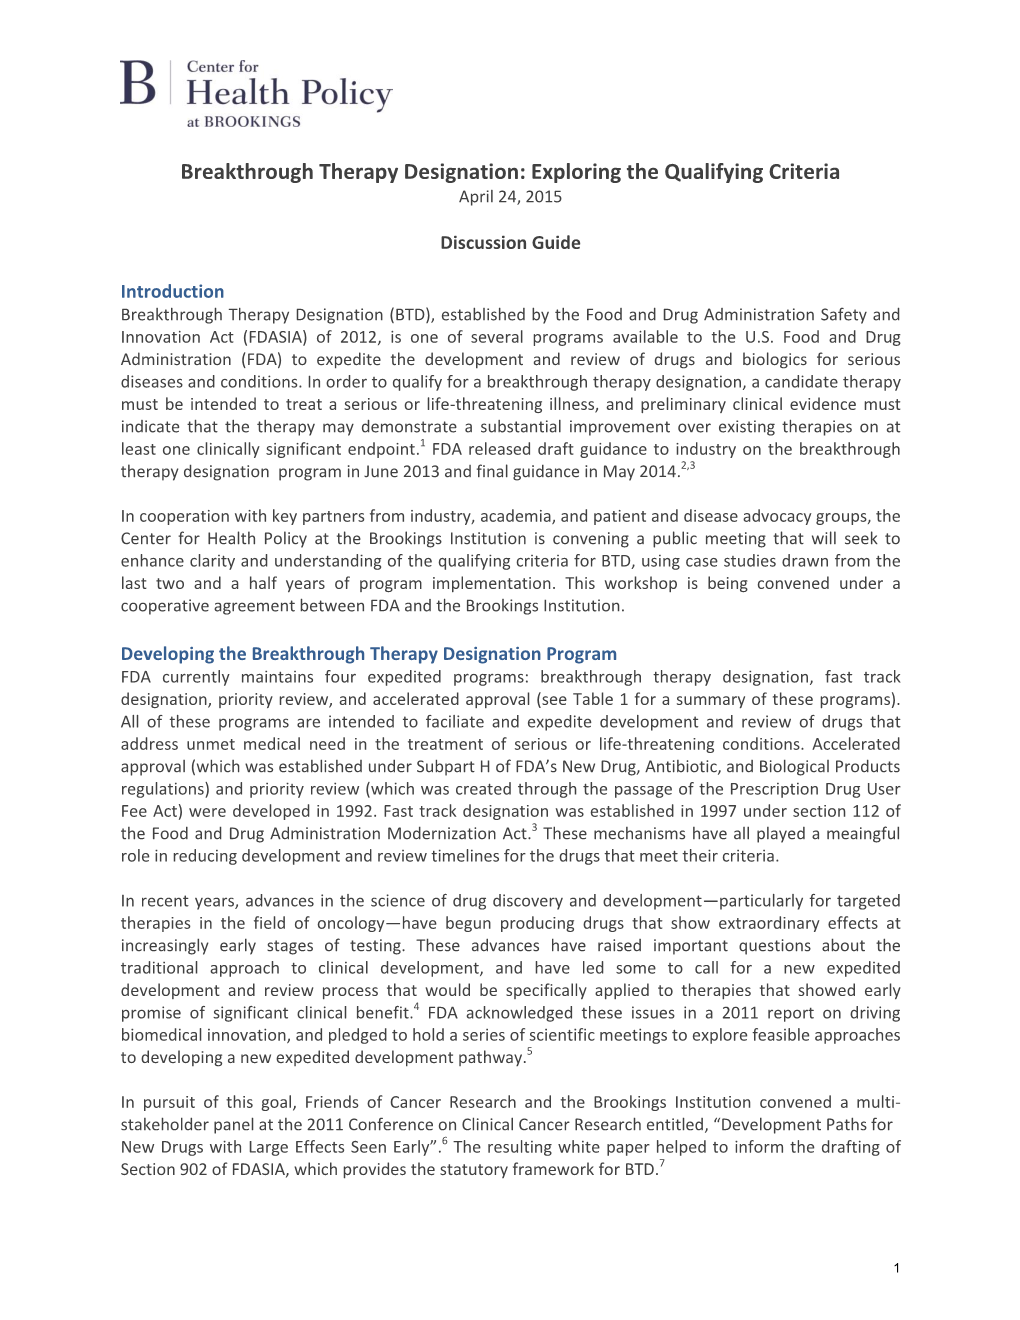 Breakthrough Therapy Designation: Exploring the Qualifying Criteria April 24, 2015